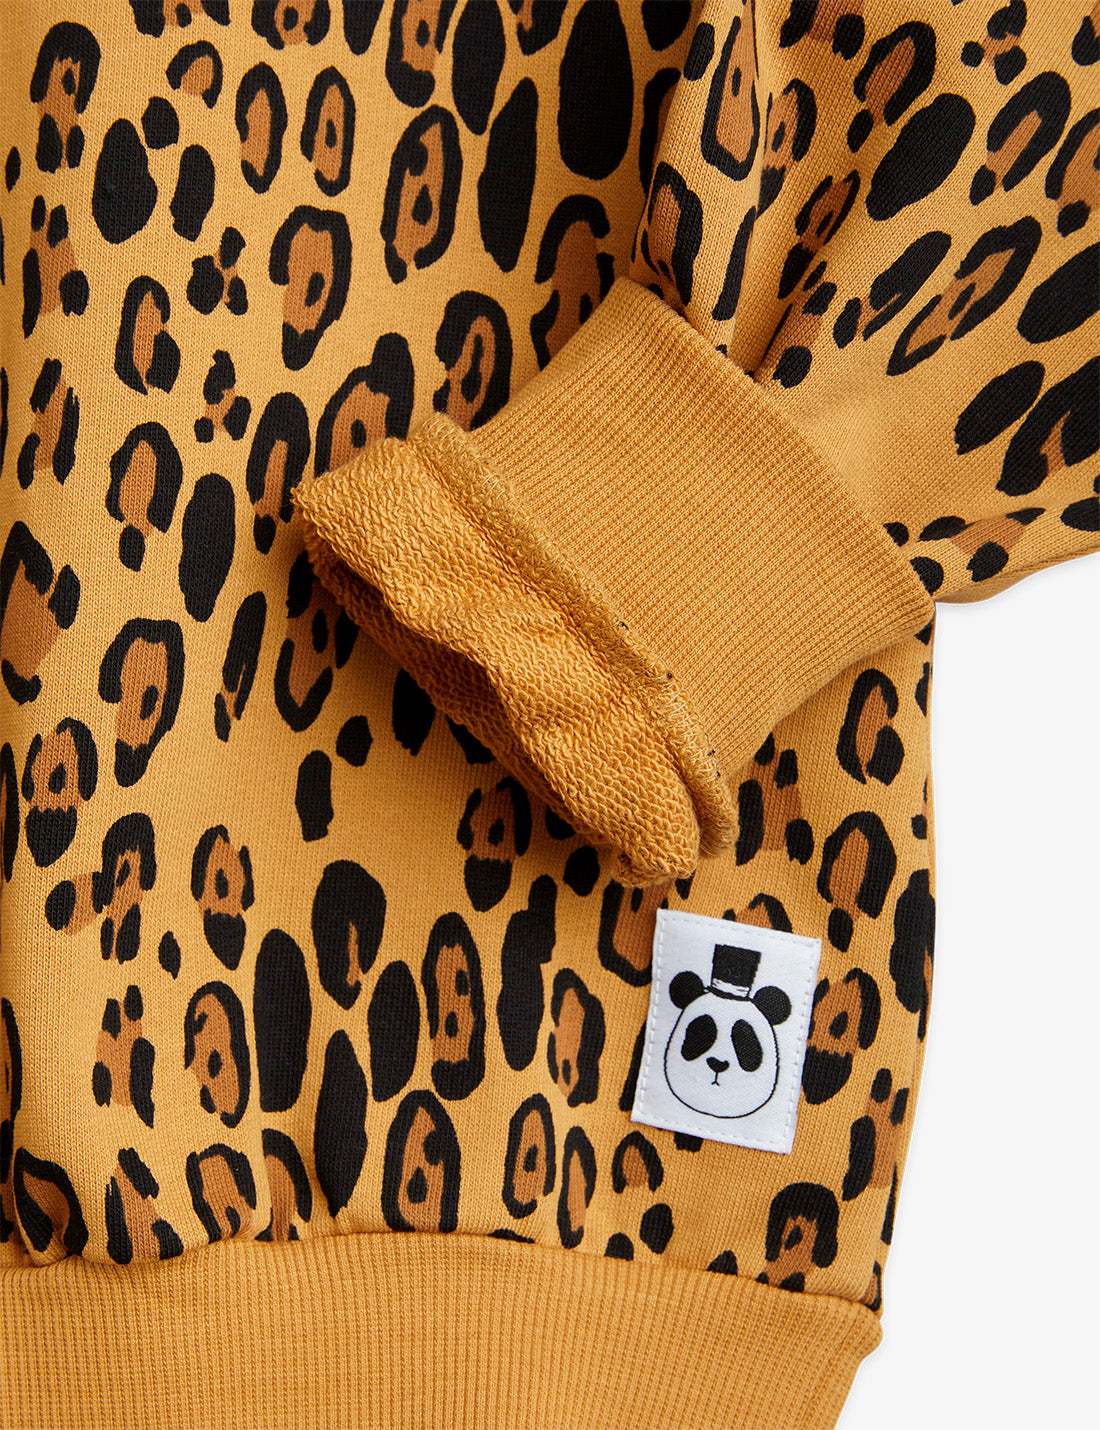 Sweatshirt Básica | Leopard